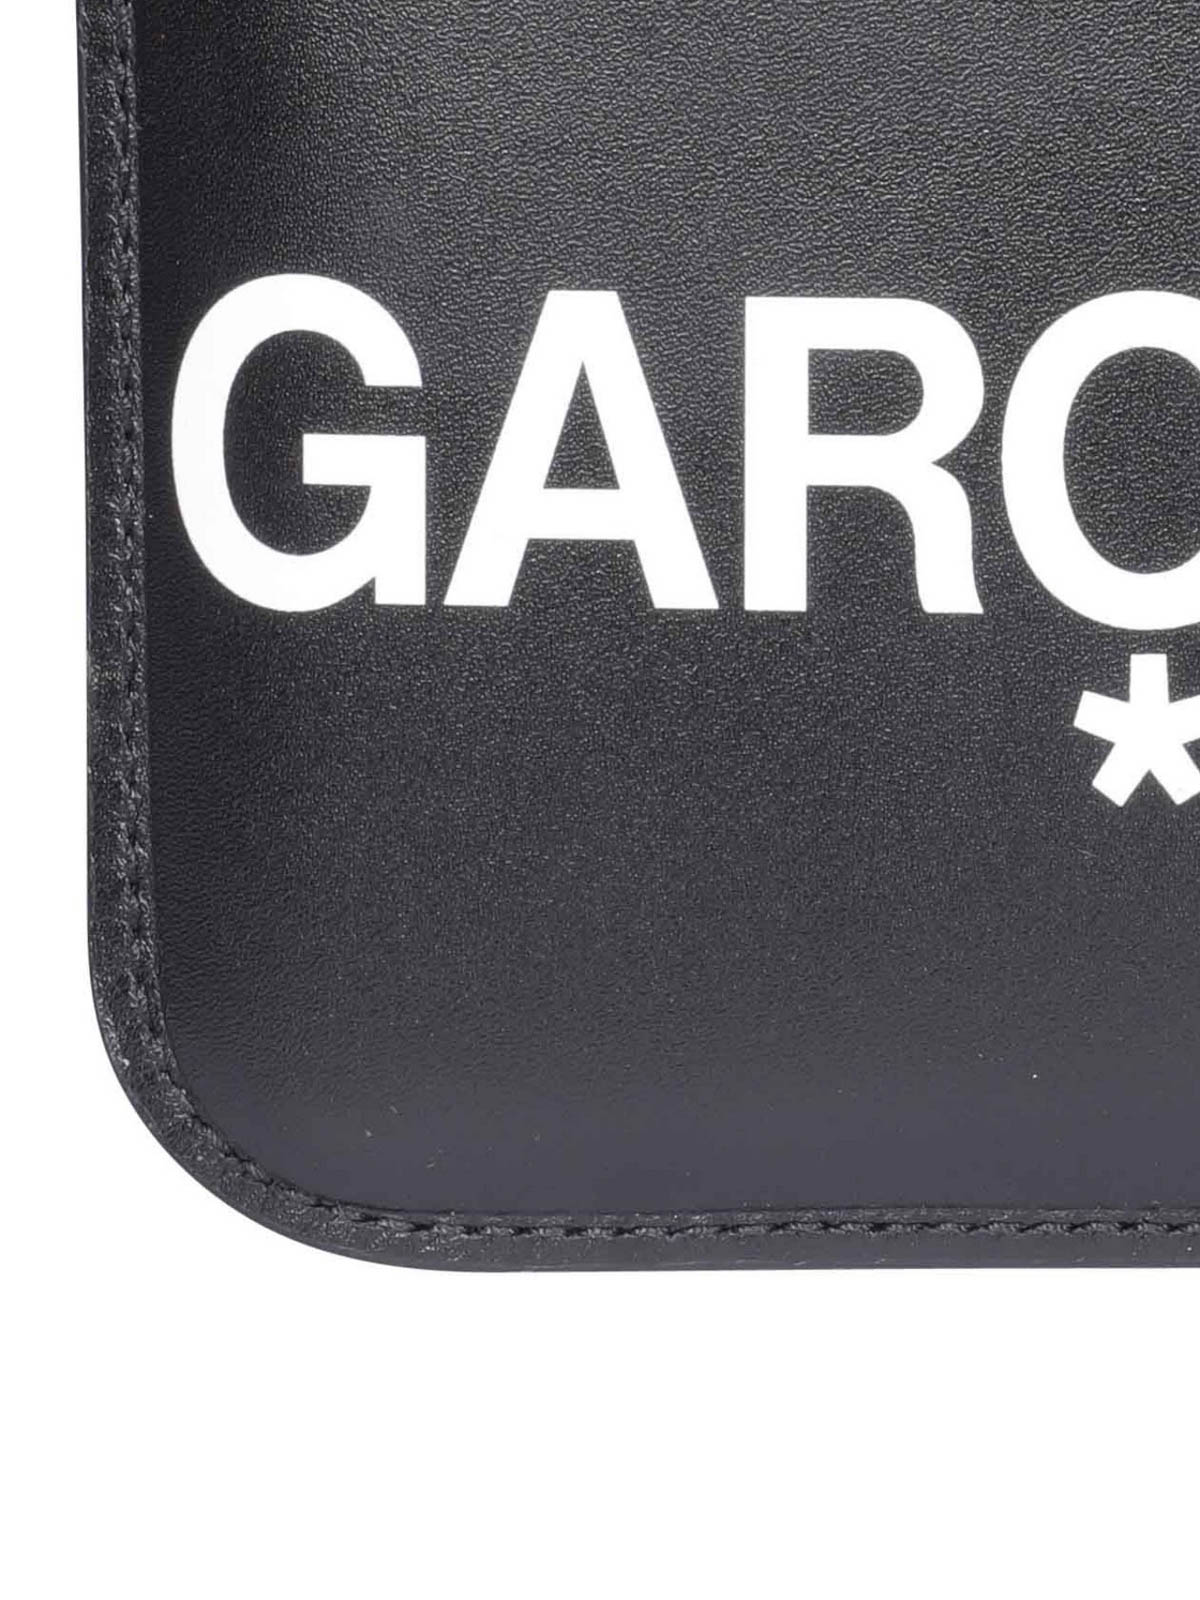 Shop Comme Des Garçons Logo Print Leather Clutch In Black